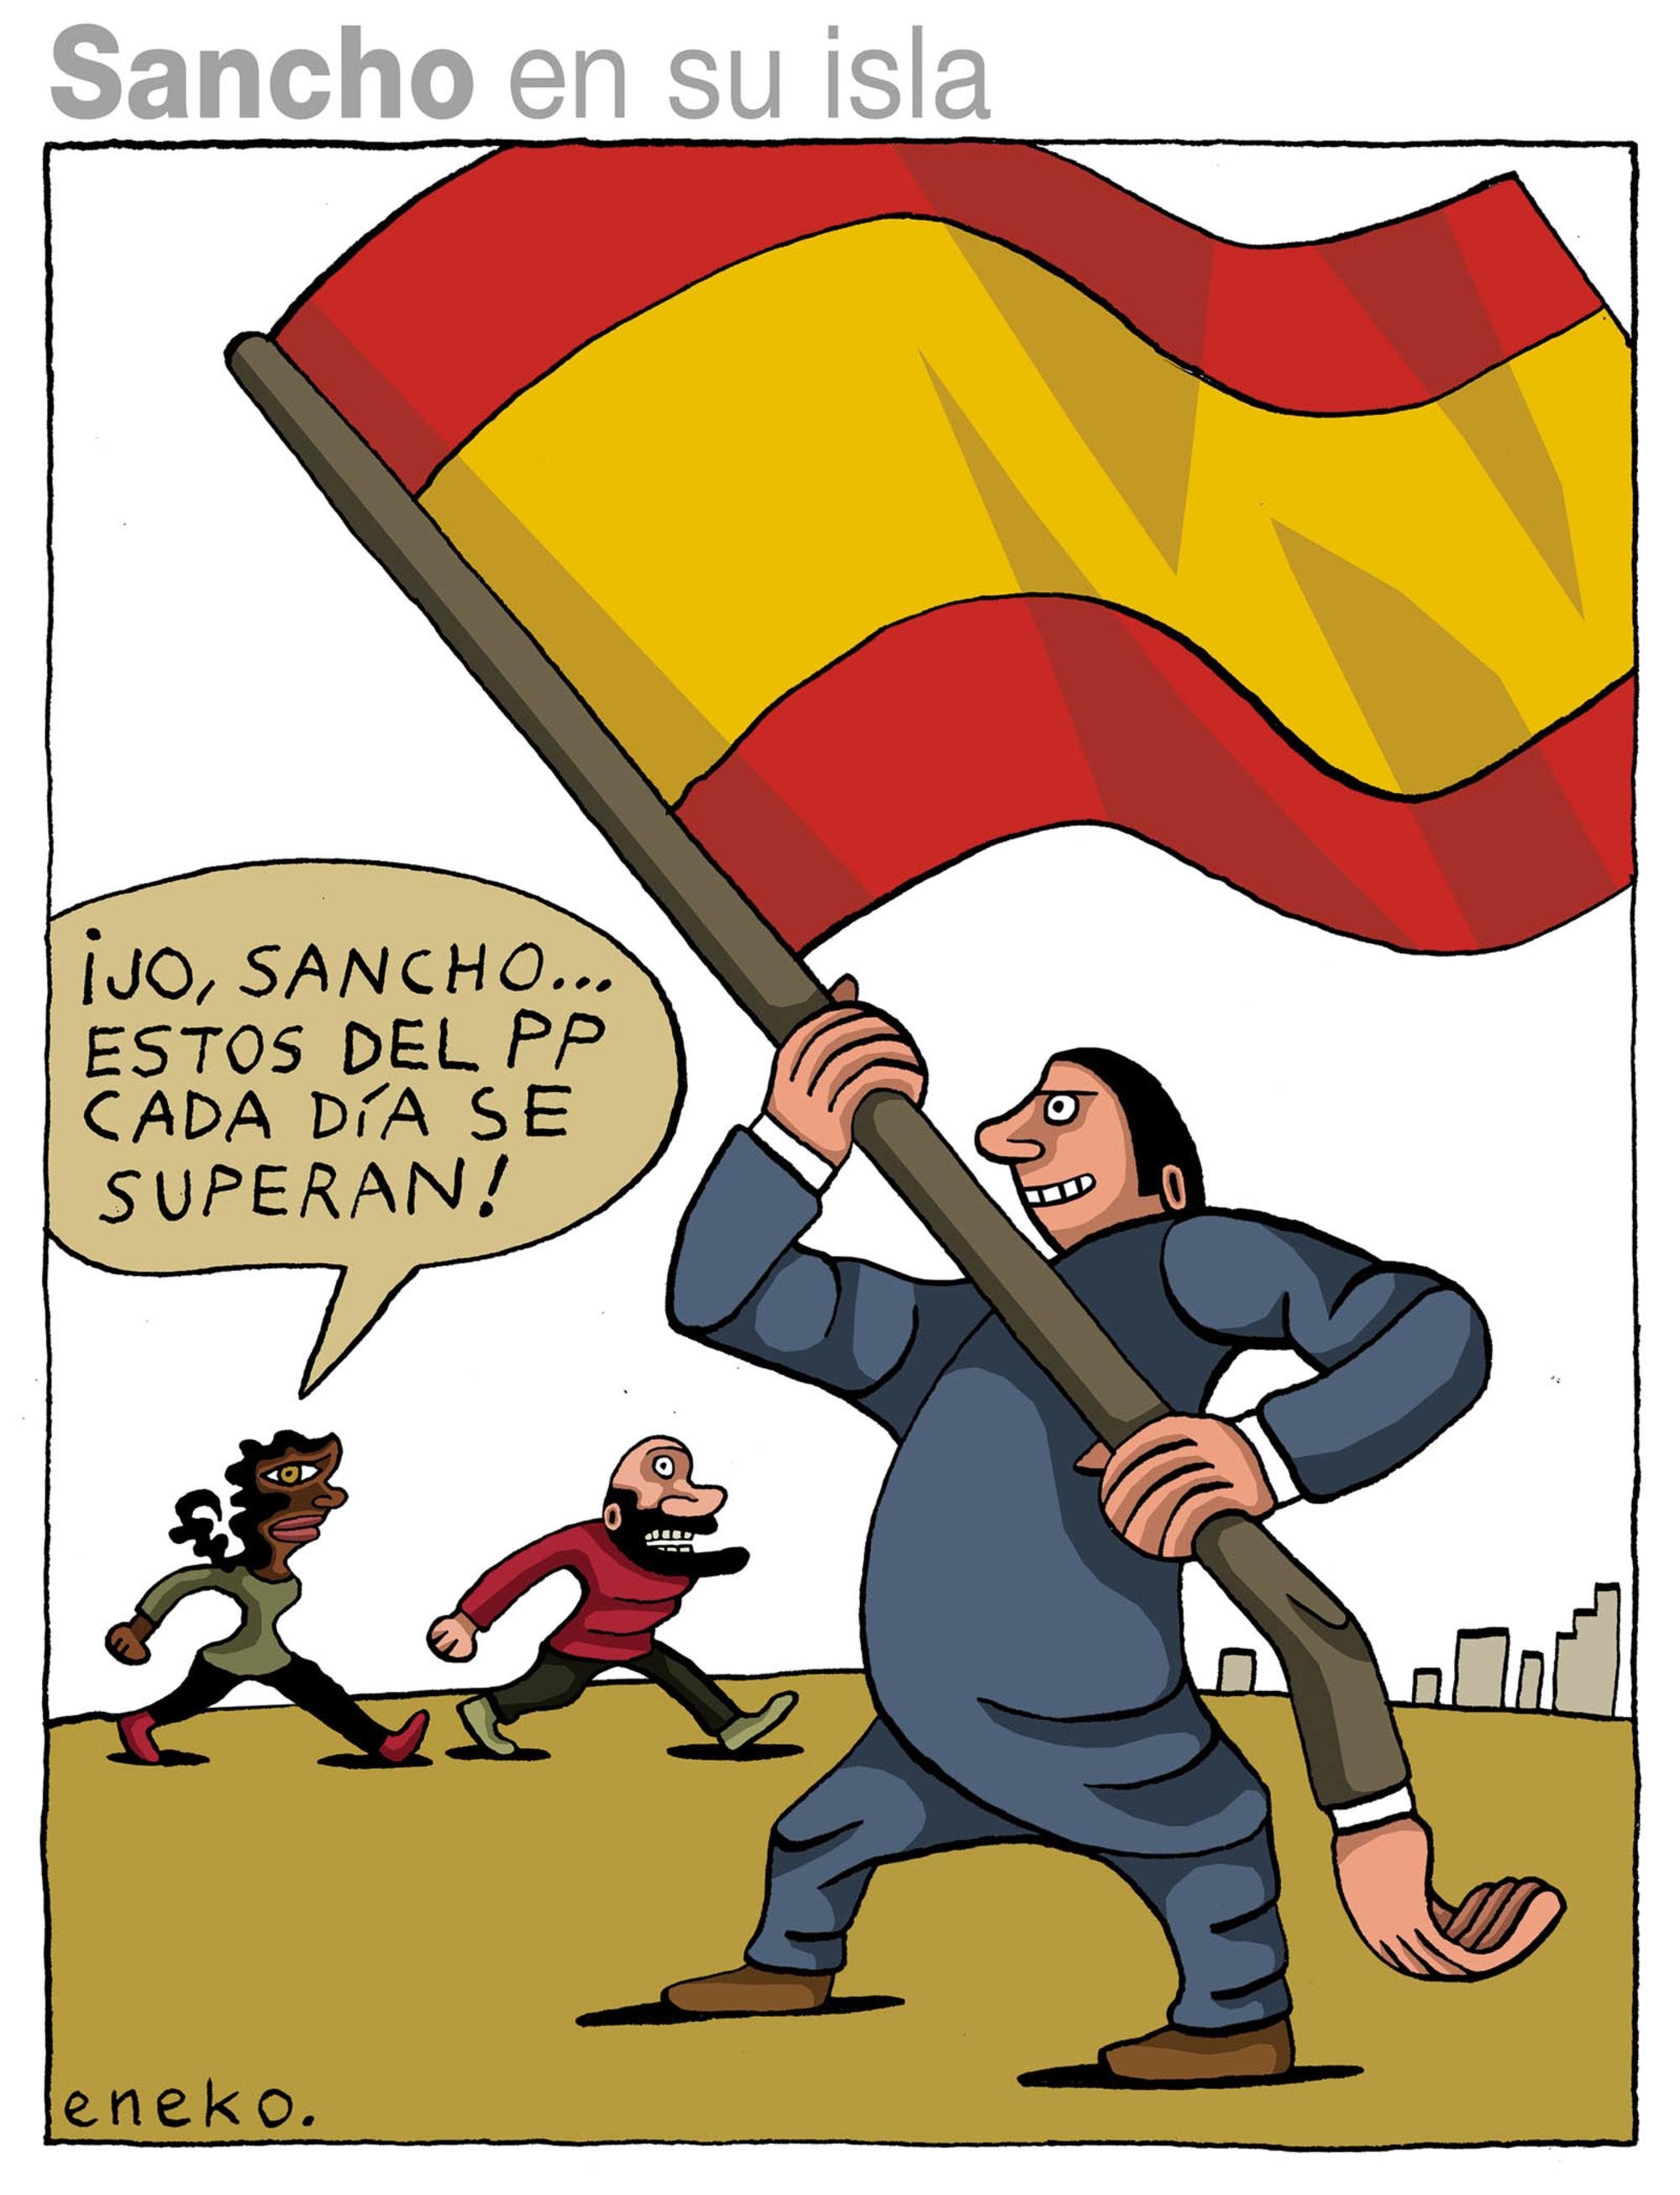 Eneko:bandera española y corrupción